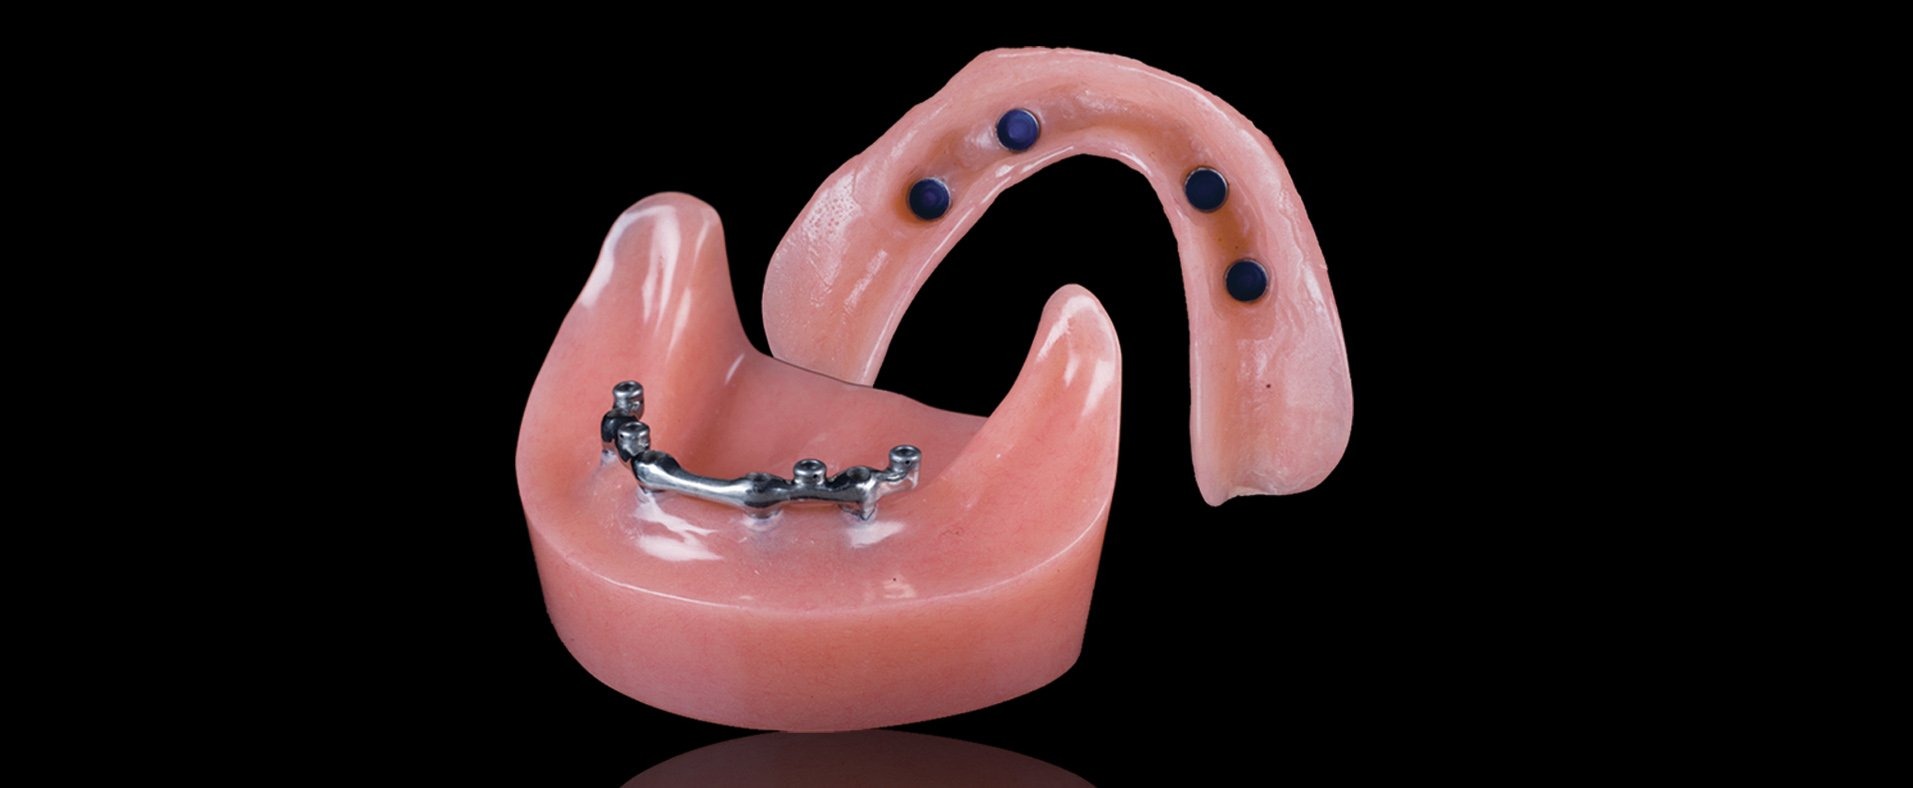 Протез на имплантах при полном отсутствии. Балочный протез на 4 имплантах. Внутрикорневой аттачмент. Балочная система крепления бюгельных протезов. Съемный протез (6-14 зубов) термо Джет.